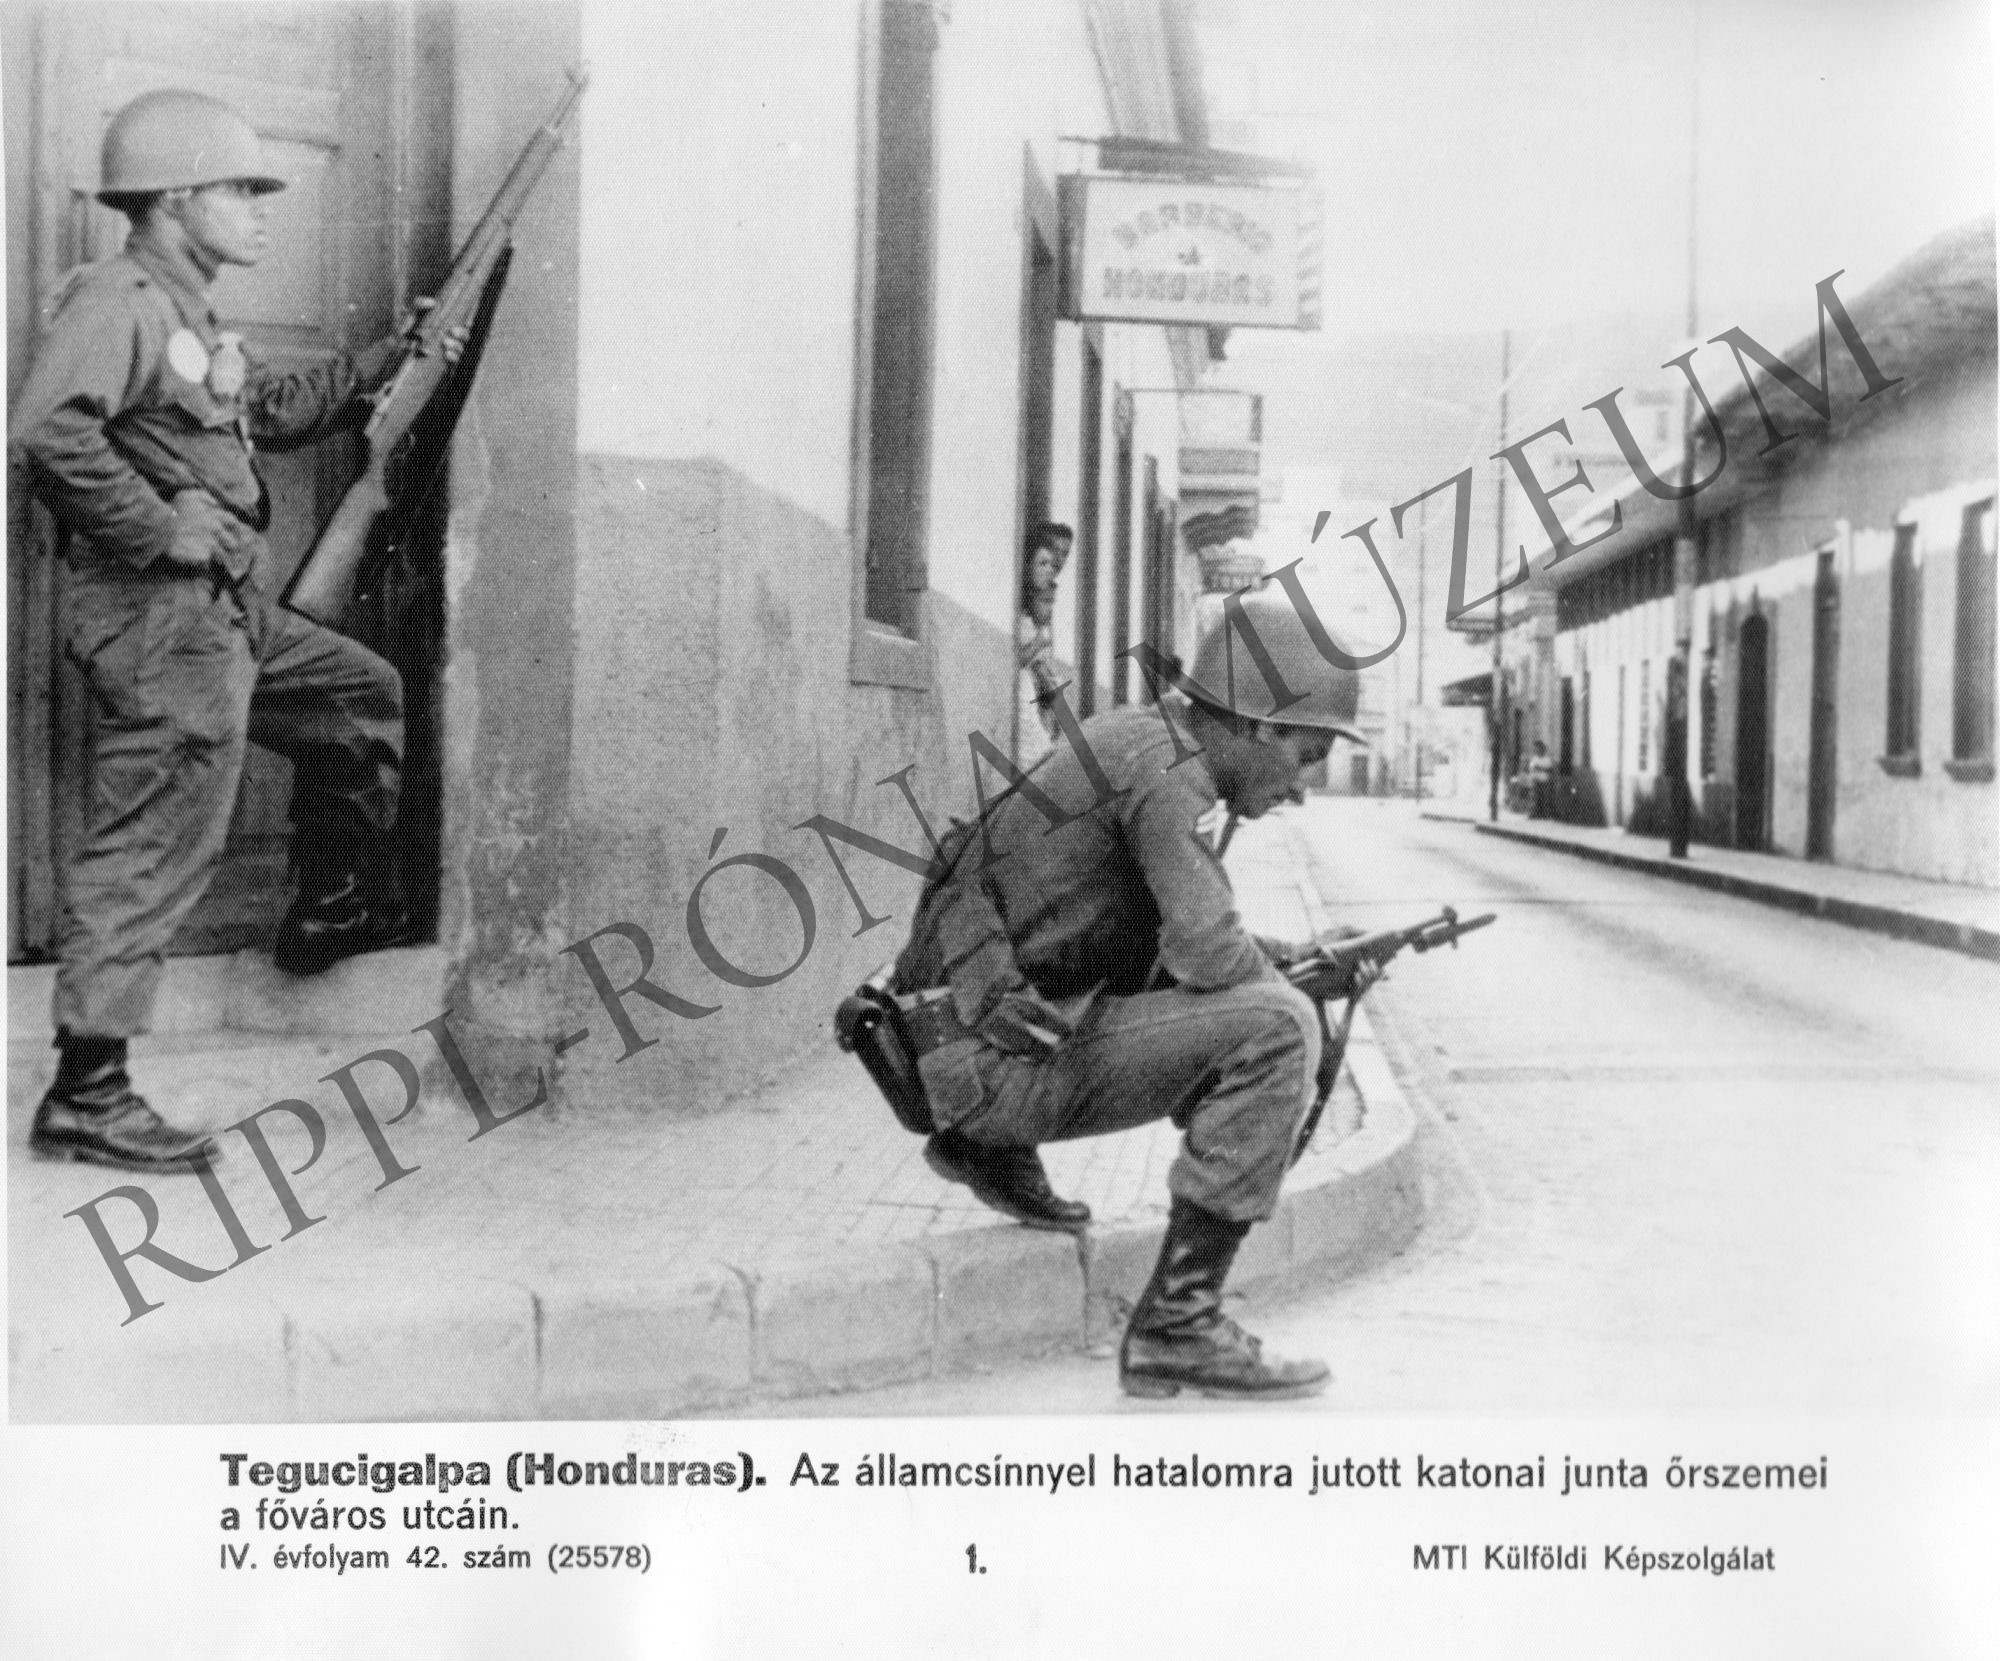 A hondurasi katonai junta őrszemei a főváros (Tegucigalpa) utcáin. (Rippl-Rónai Múzeum CC BY-NC-SA)